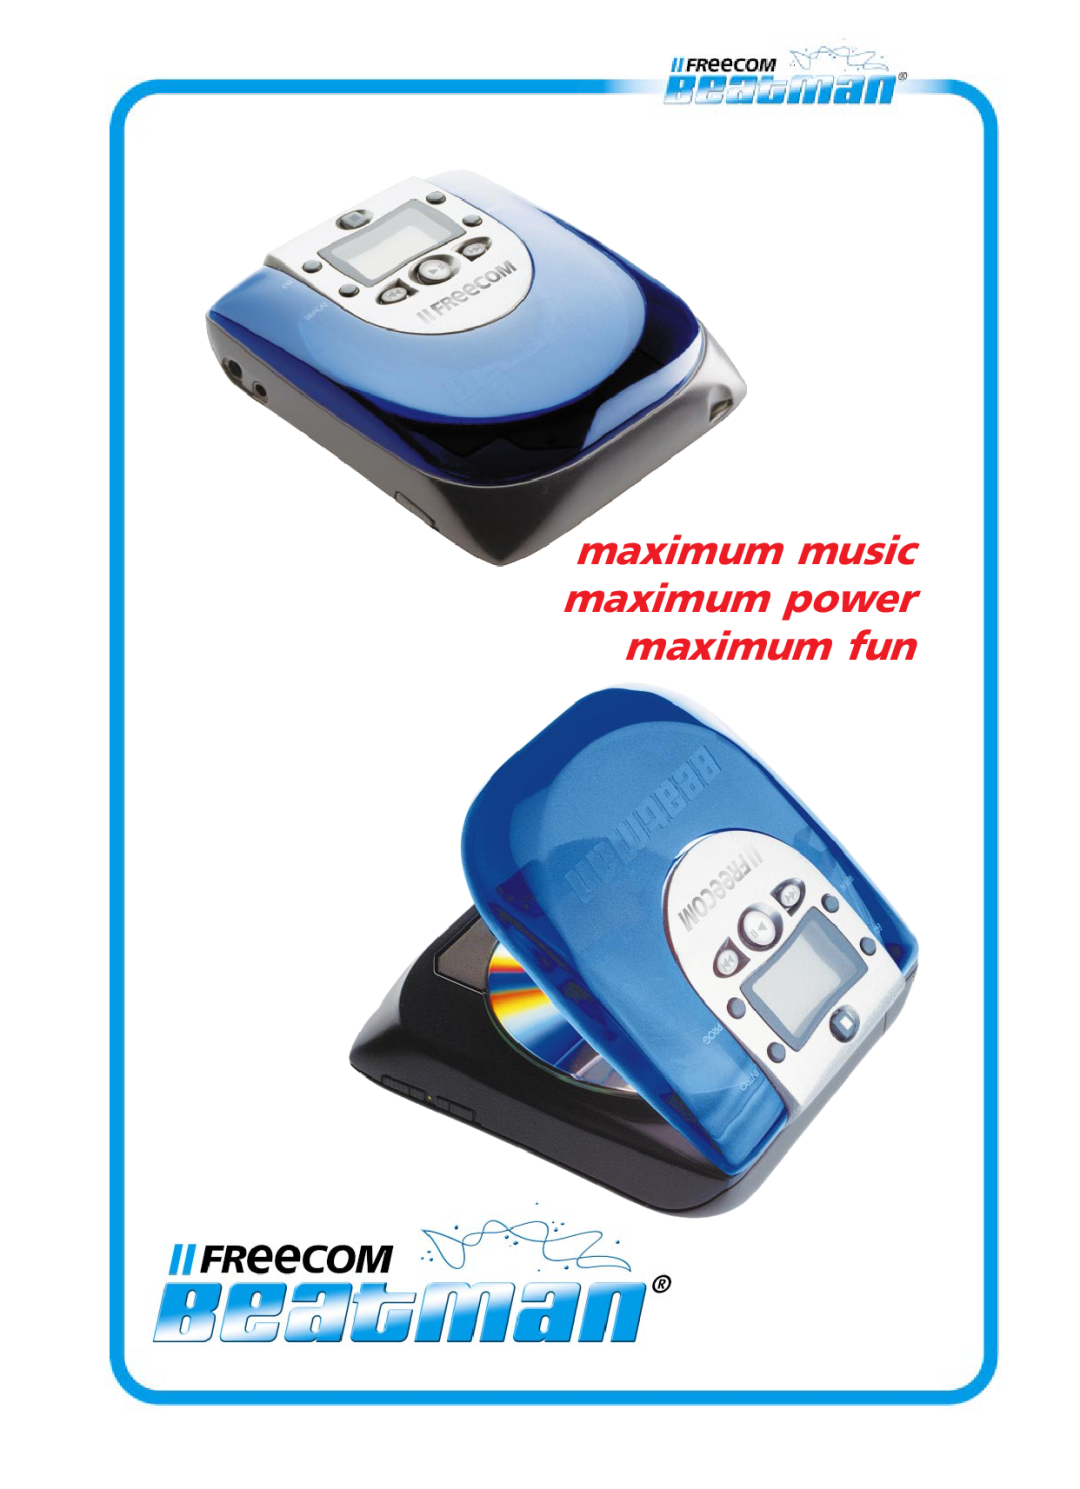 Freecom Technologies Beatman Mini CD I manual maximum music maximum power maximum fun 